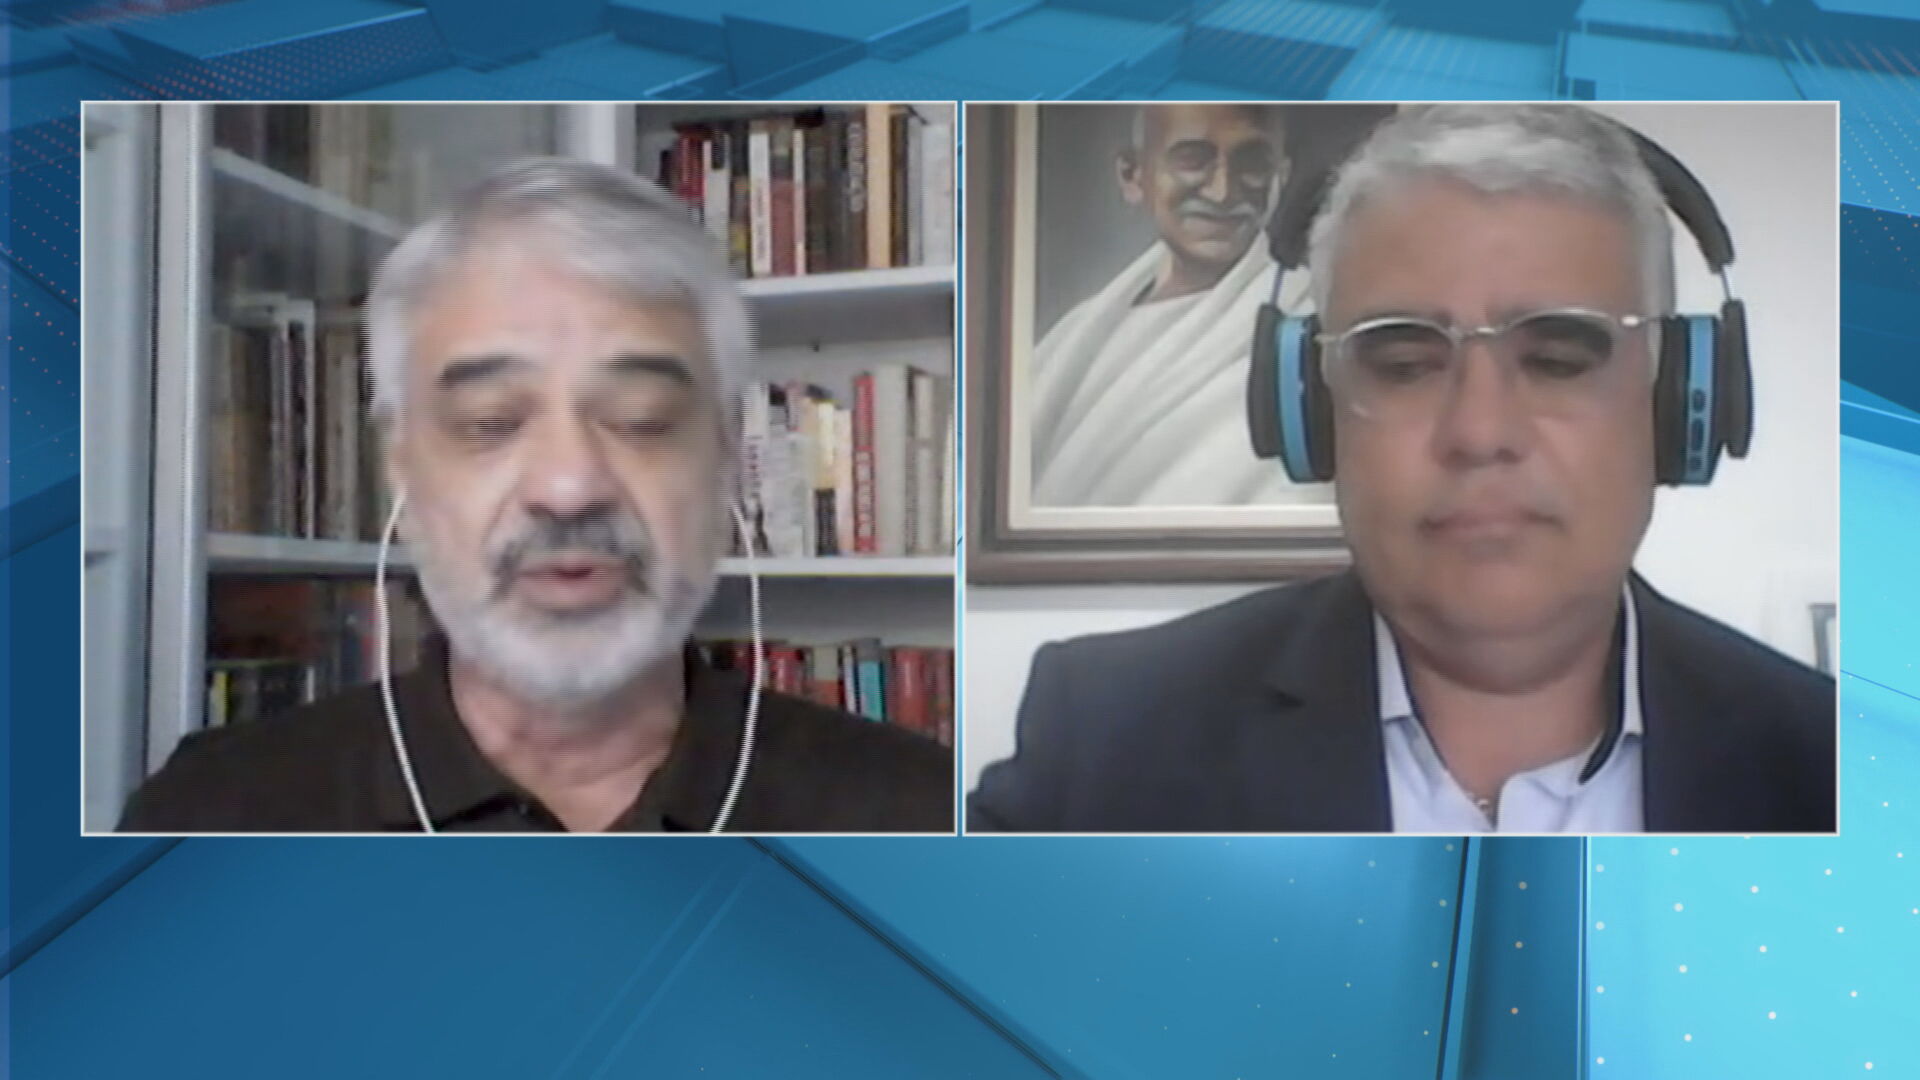 Senadores Humberto Costa e Eduardo Girão debateram a CPI da Covid na CNN